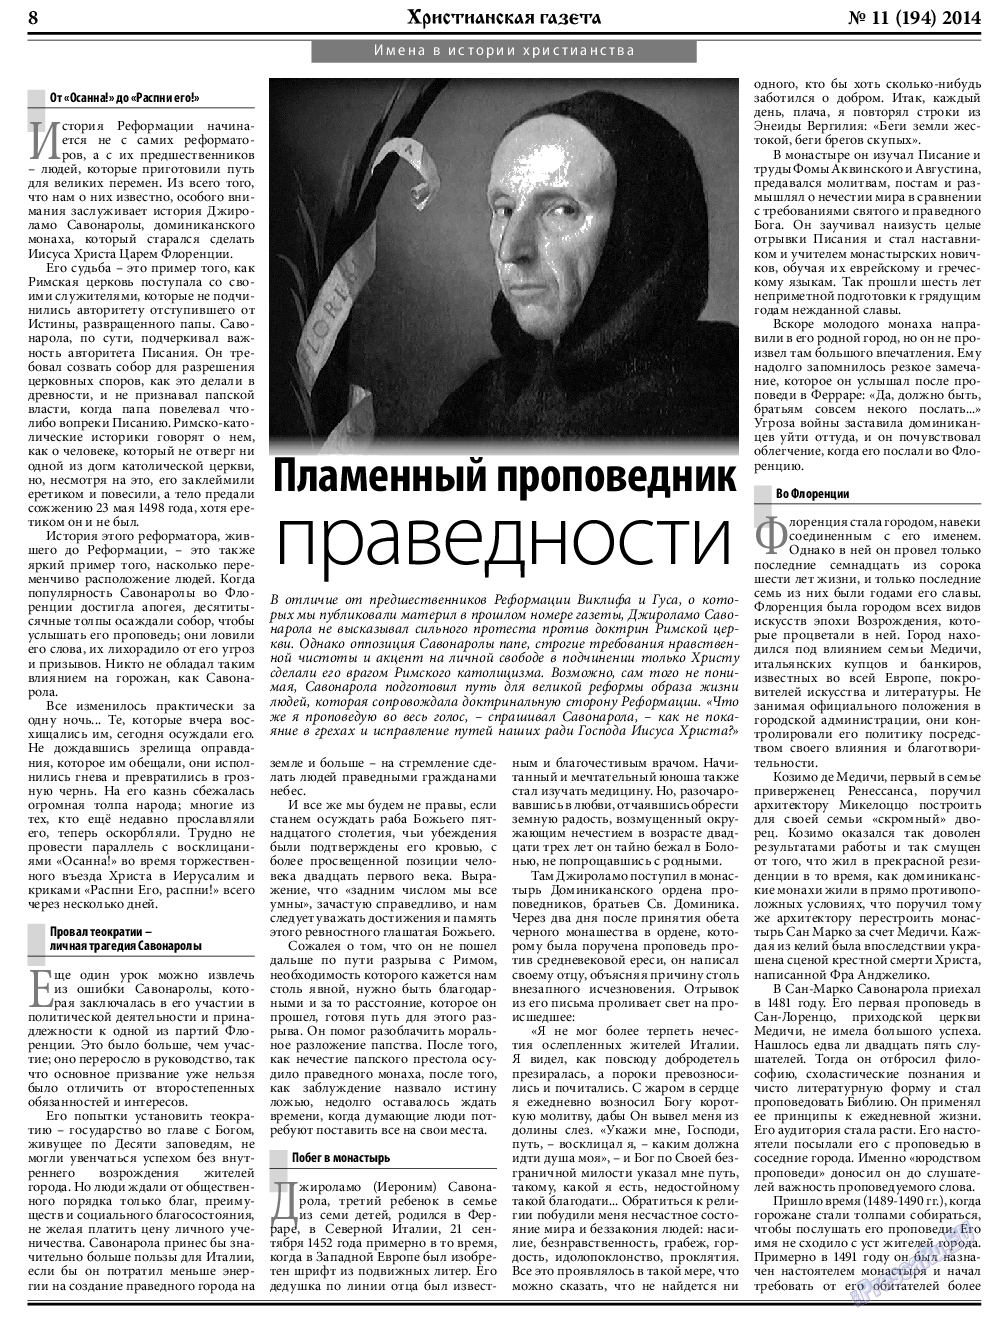 Христианская газета, газета. 2014 №11 стр.8